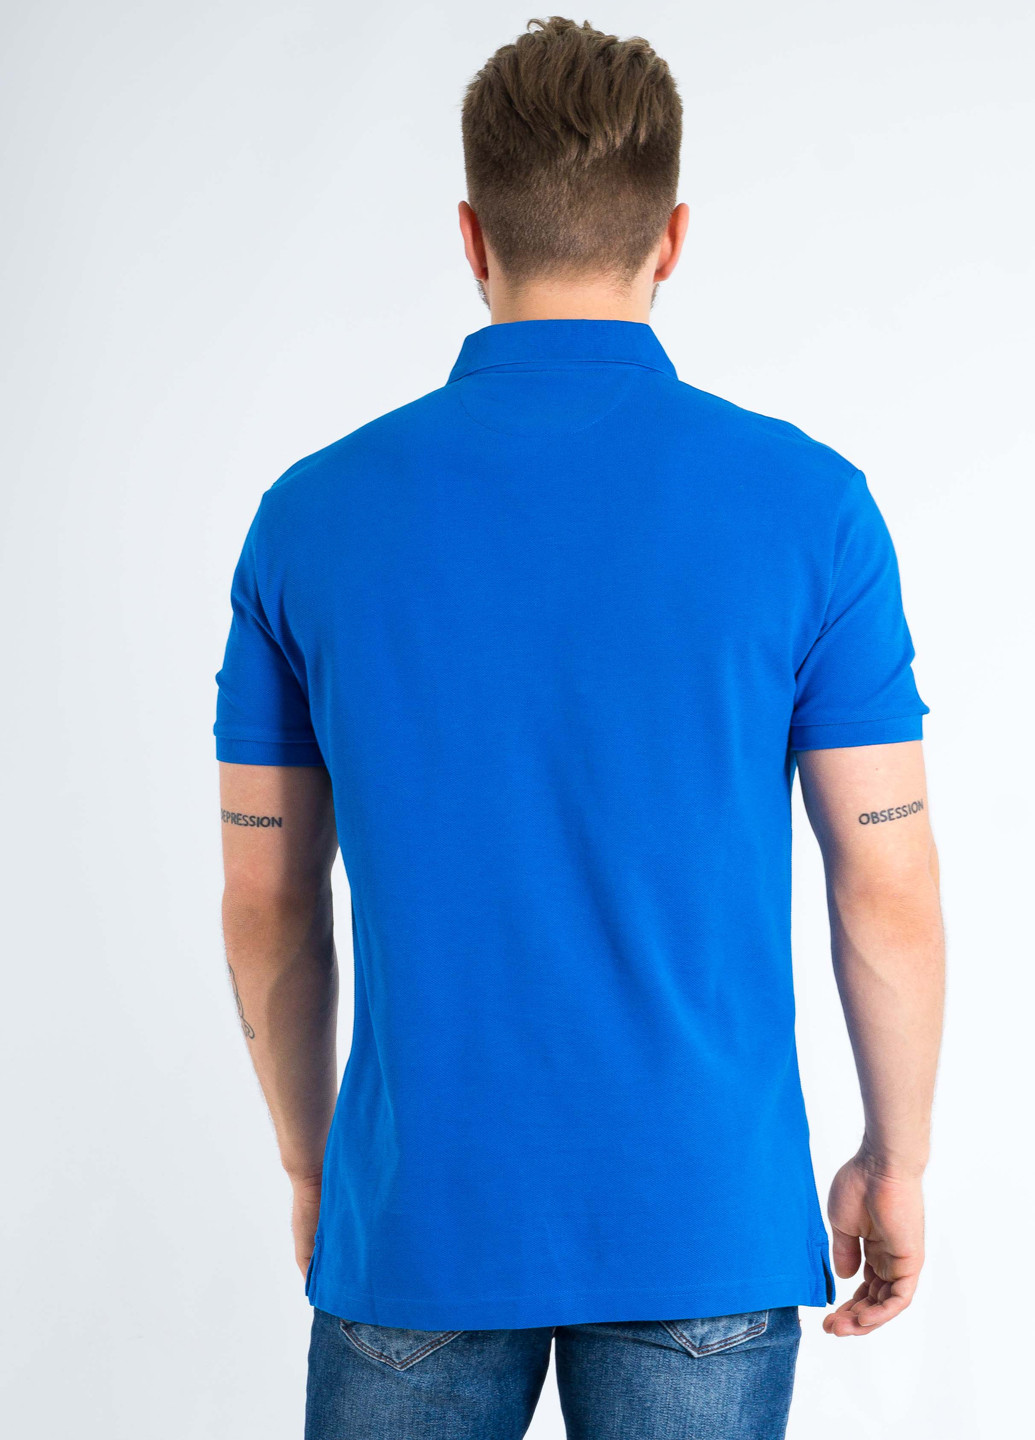 Синяя футболка-поло для мужчин Hackett однотонная